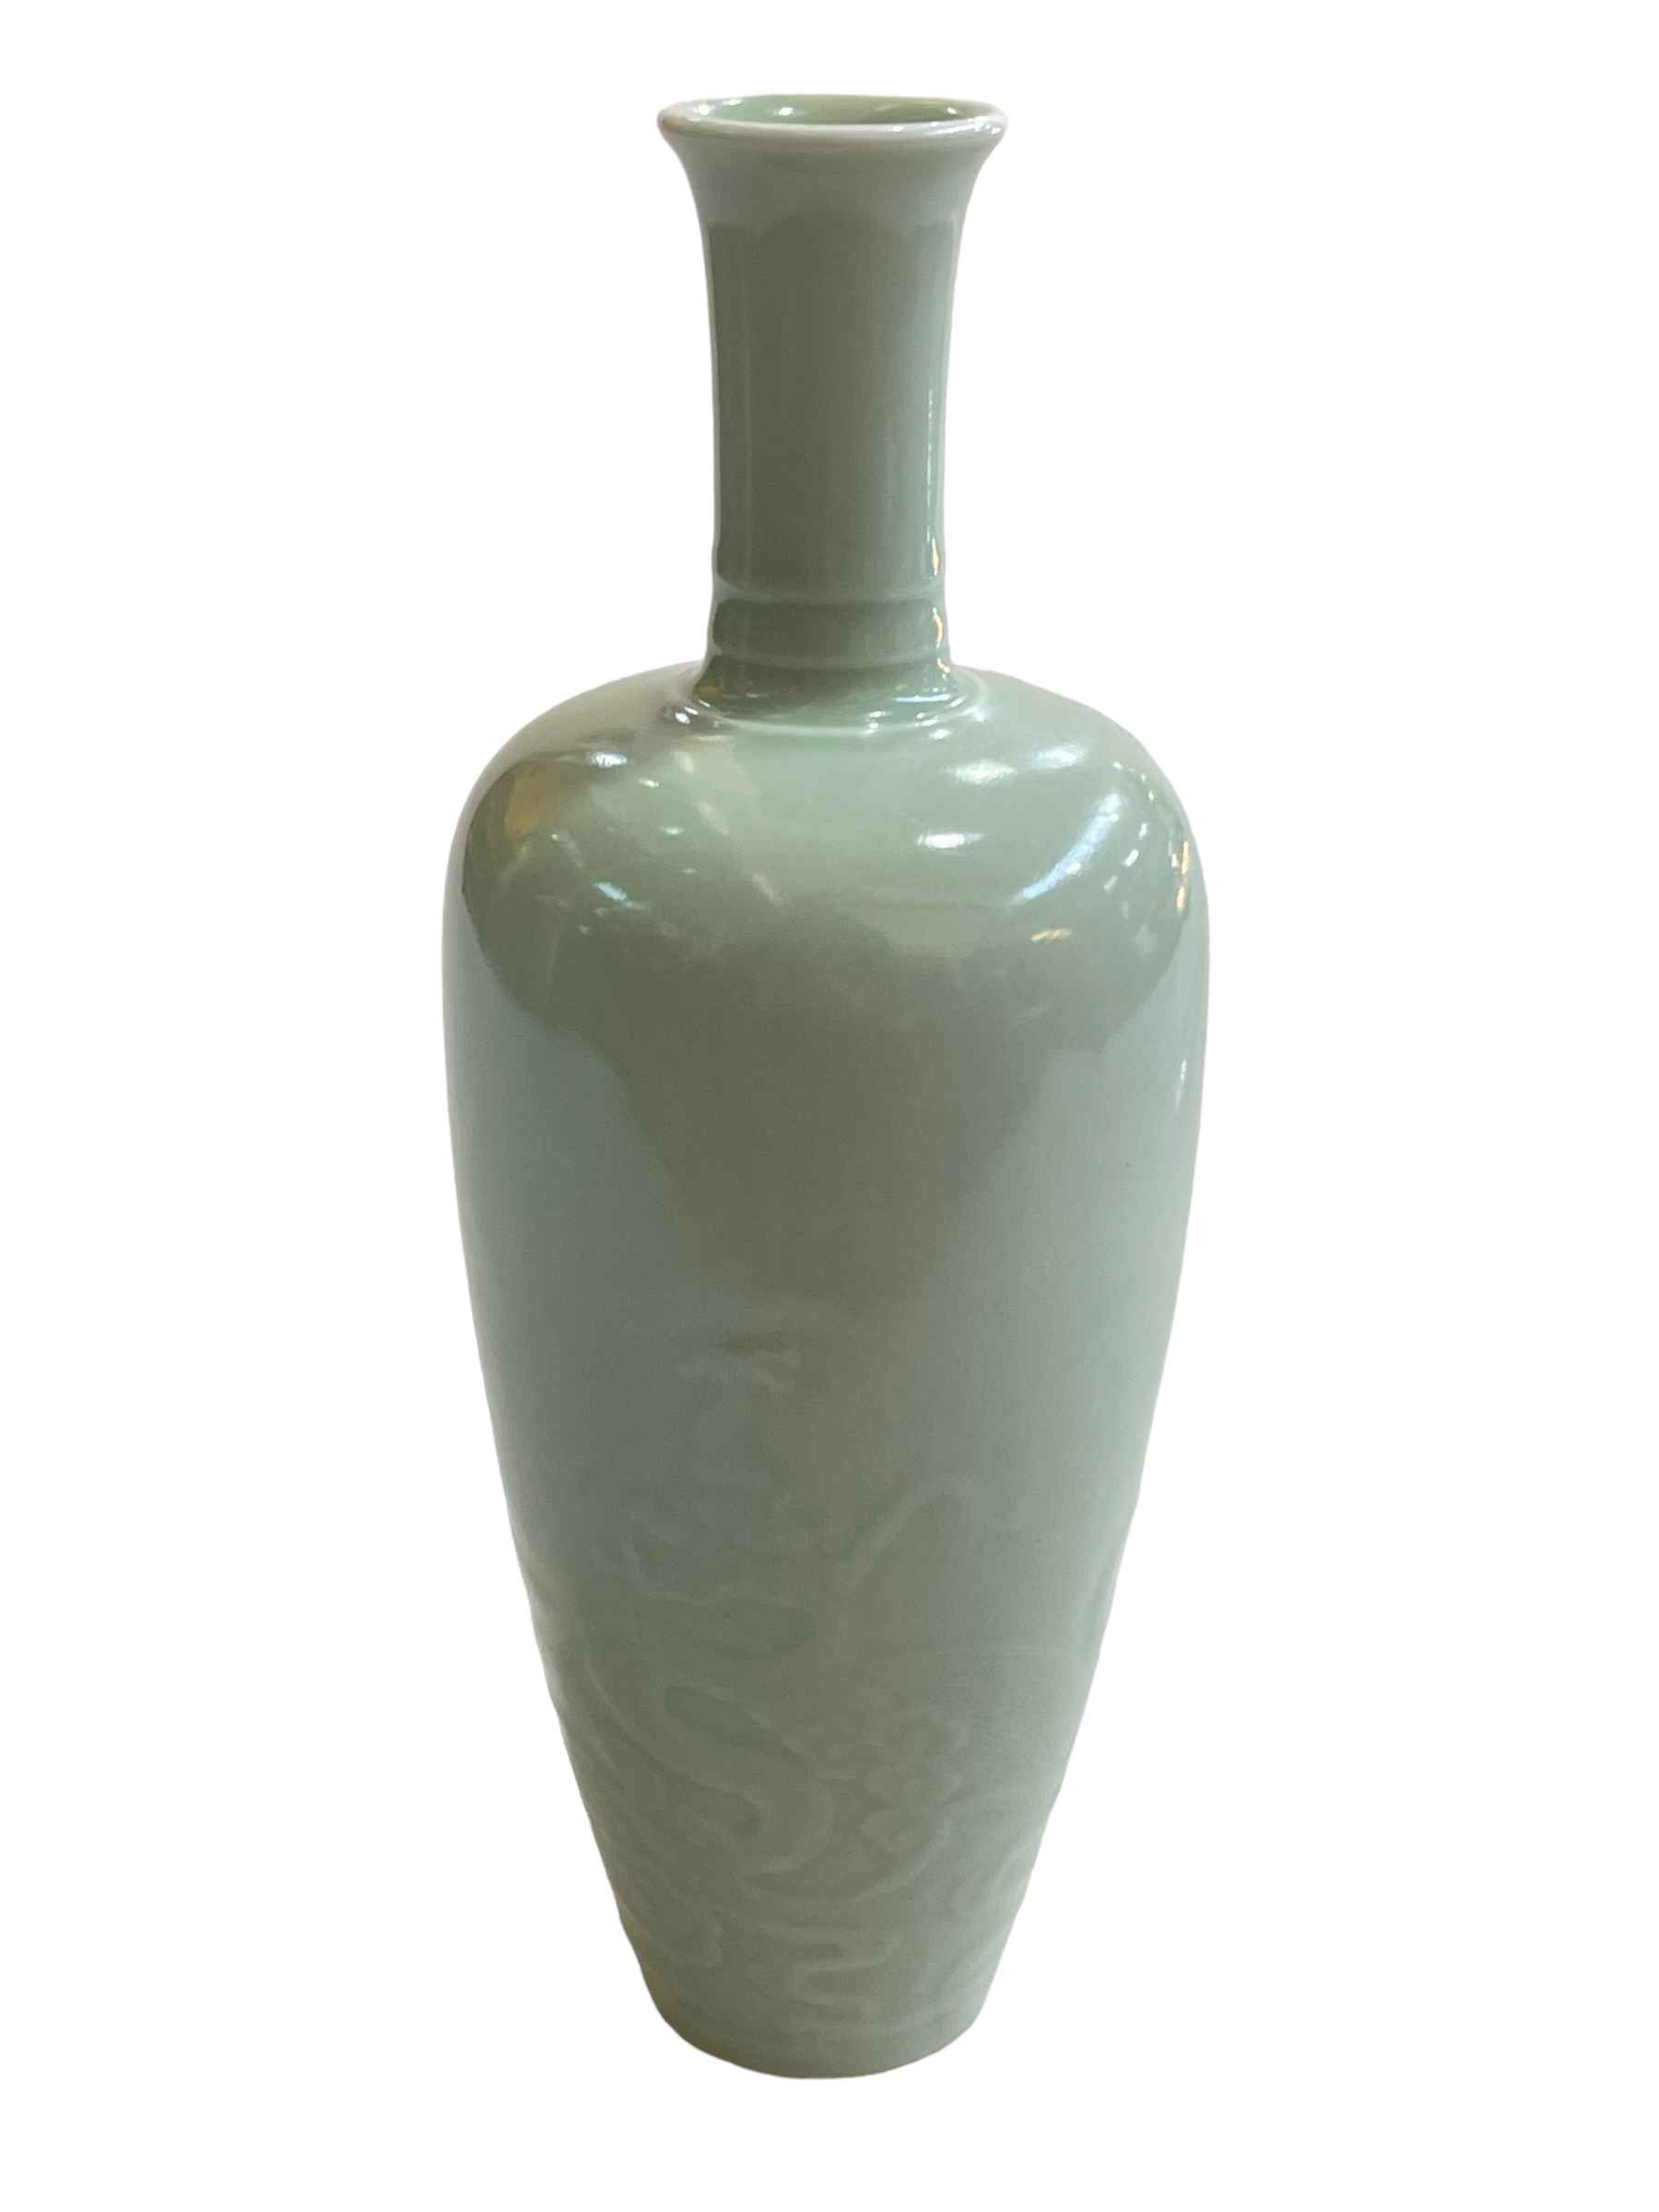 Chinese Celadon china vase with raised dragon decoration, six character Kangxi mark to base, 21cm. - Image 2 of 4